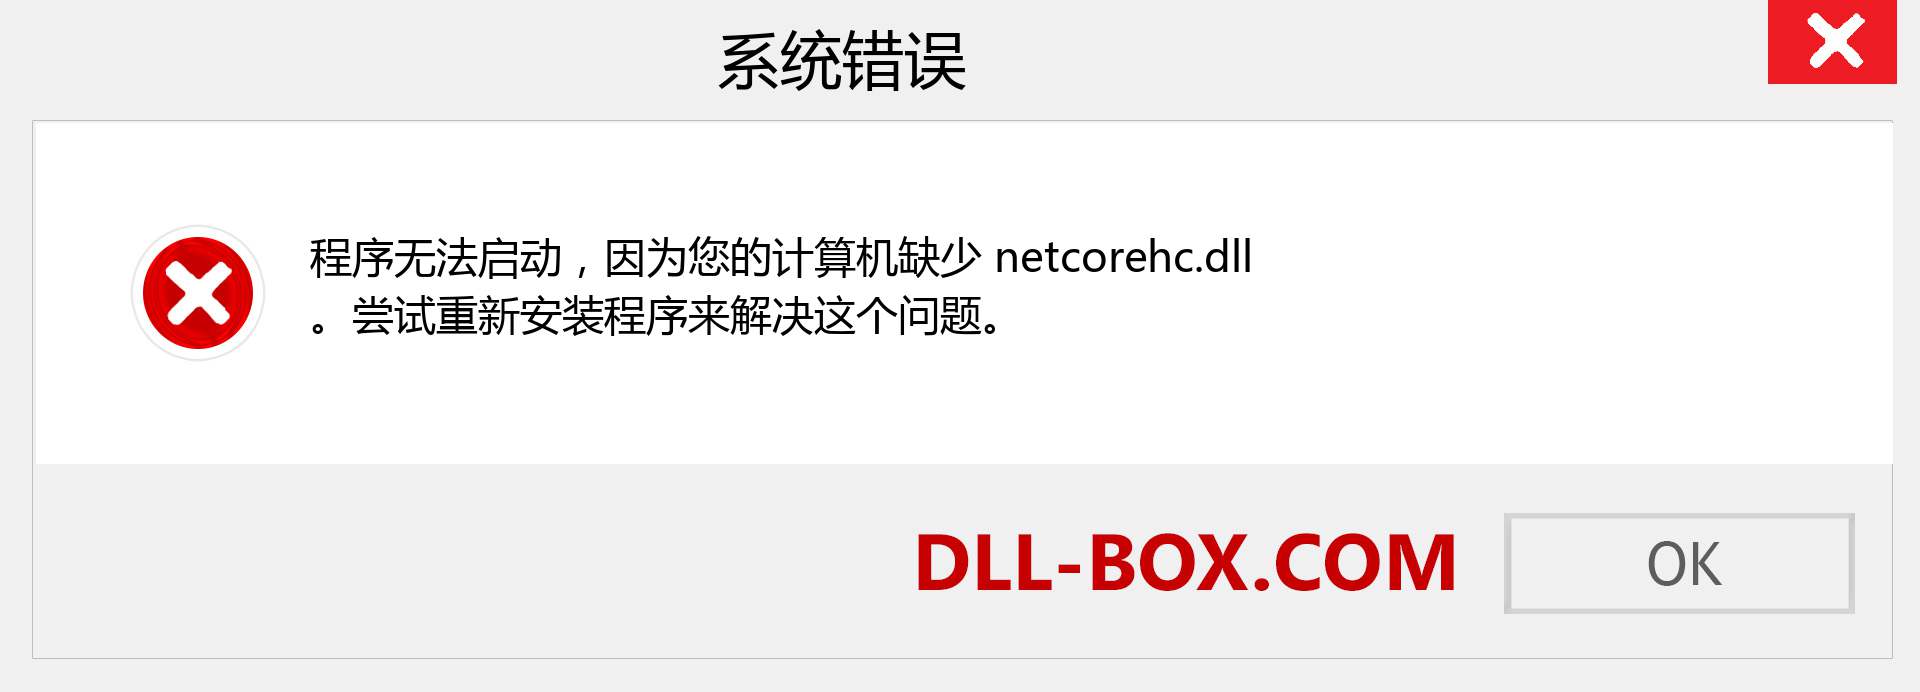 netcorehc.dll 文件丢失？。 适用于 Windows 7、8、10 的下载 - 修复 Windows、照片、图像上的 netcorehc dll 丢失错误